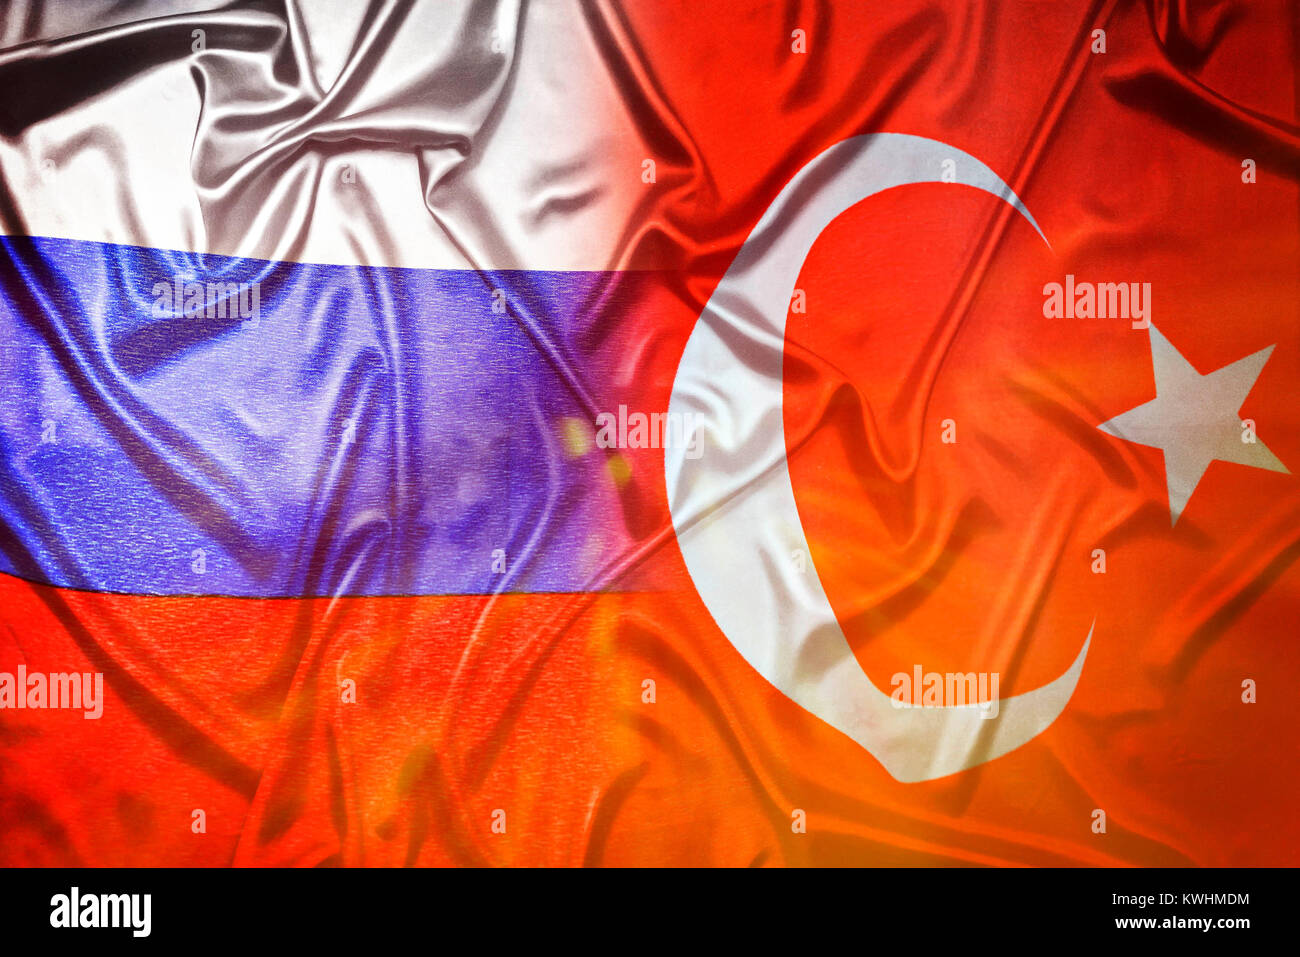 Flags of Turkey and Russia, Fahnen von Tuerkei und Russland Stock Photo